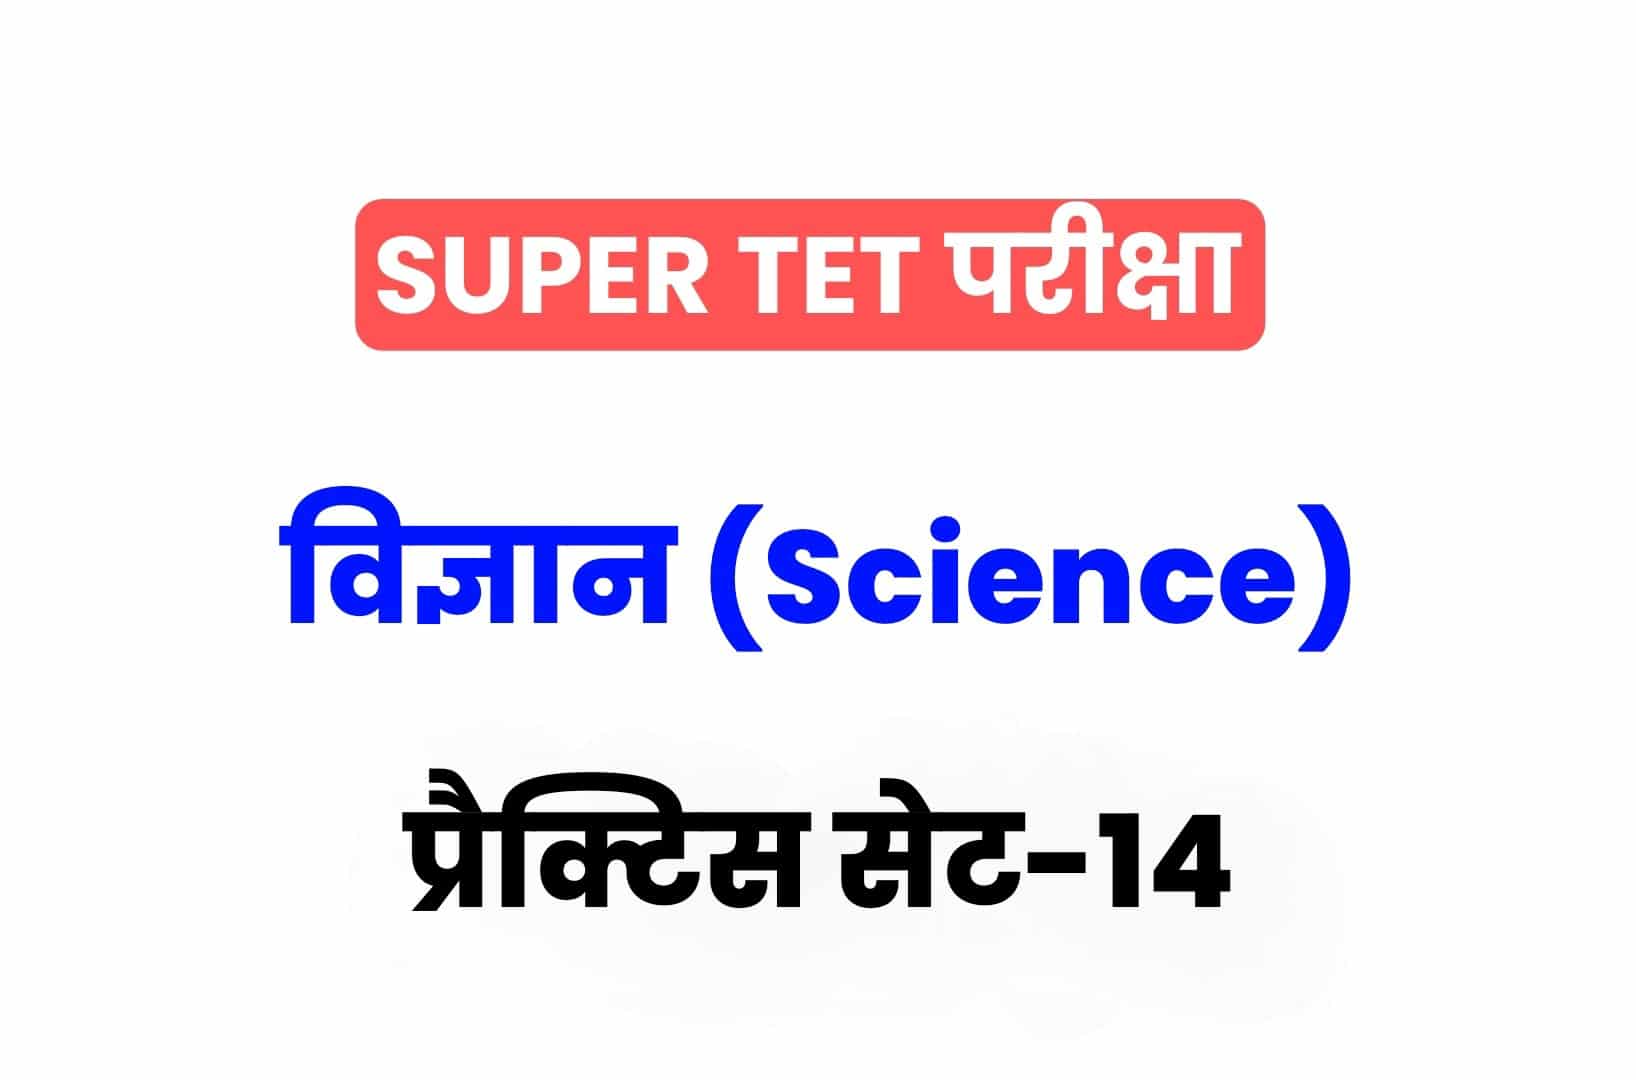 SUPER TET 2022 Science प्रैक्टिस सेट 14: विज्ञान के 15 ऐसे सवाल जो आगामी सुपर टेट परीक्षा में पूछे जा सकते हैं, अवश्य देखें